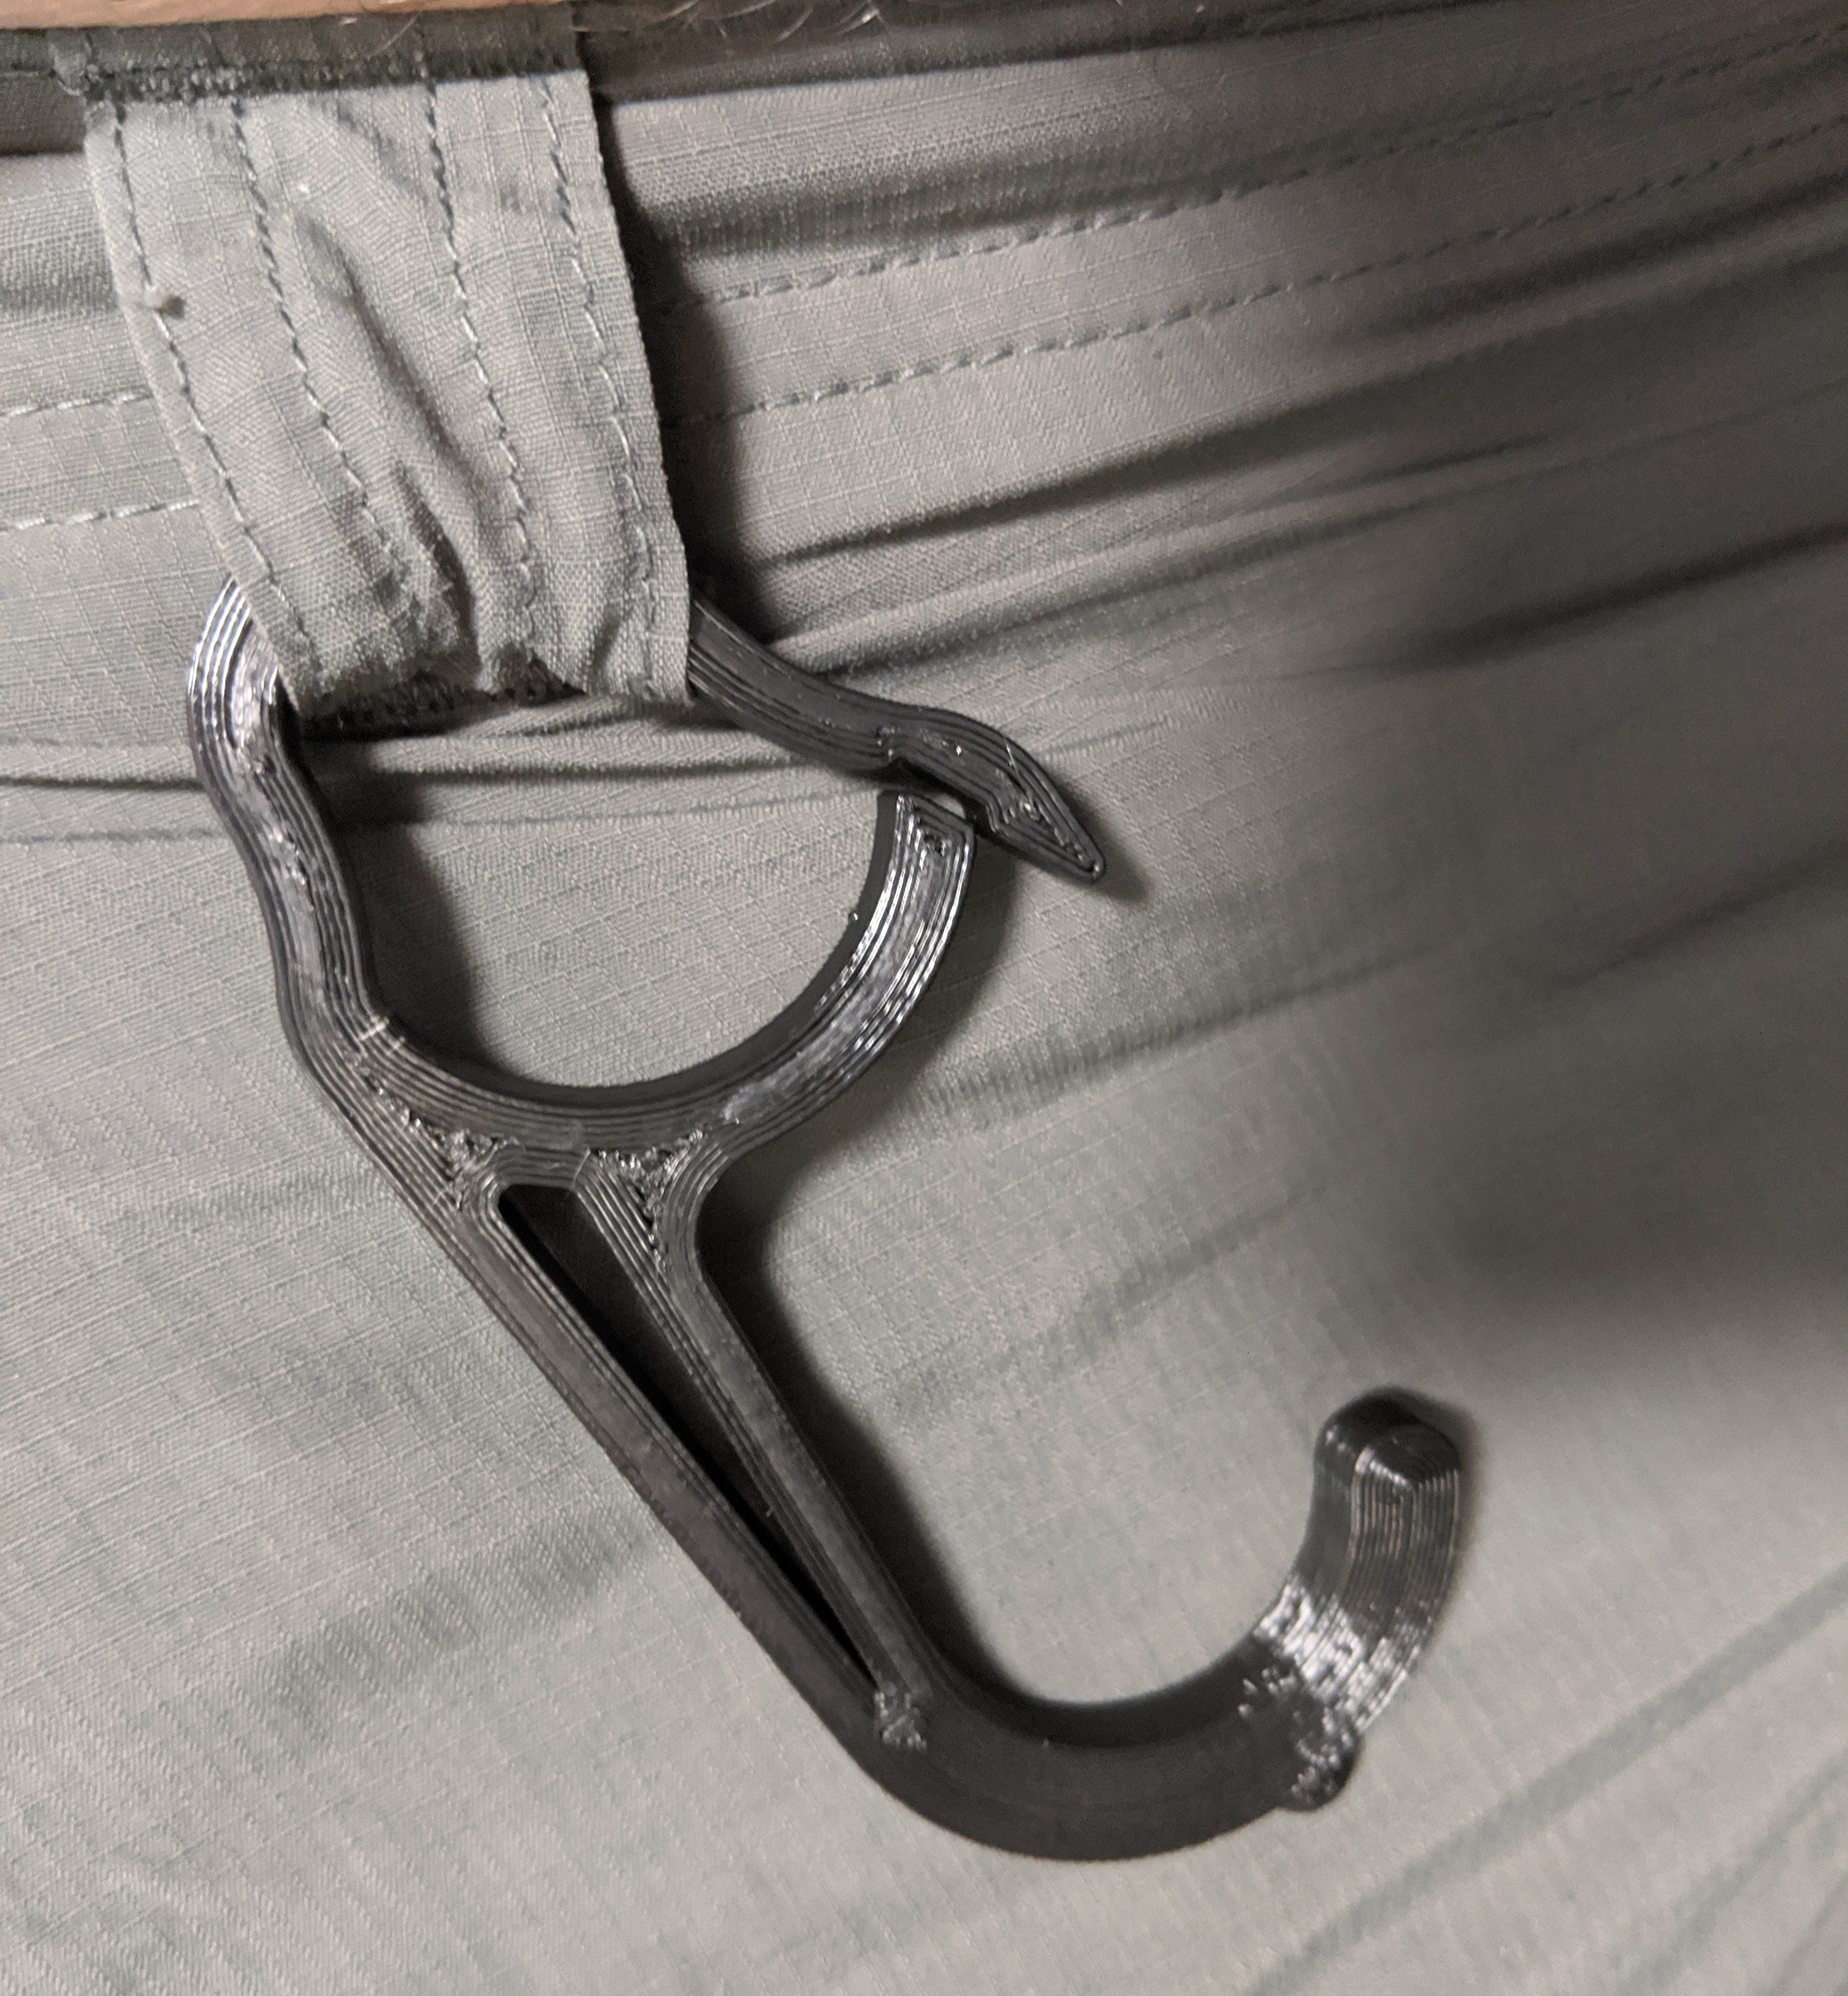 Door opener hook with belt clip